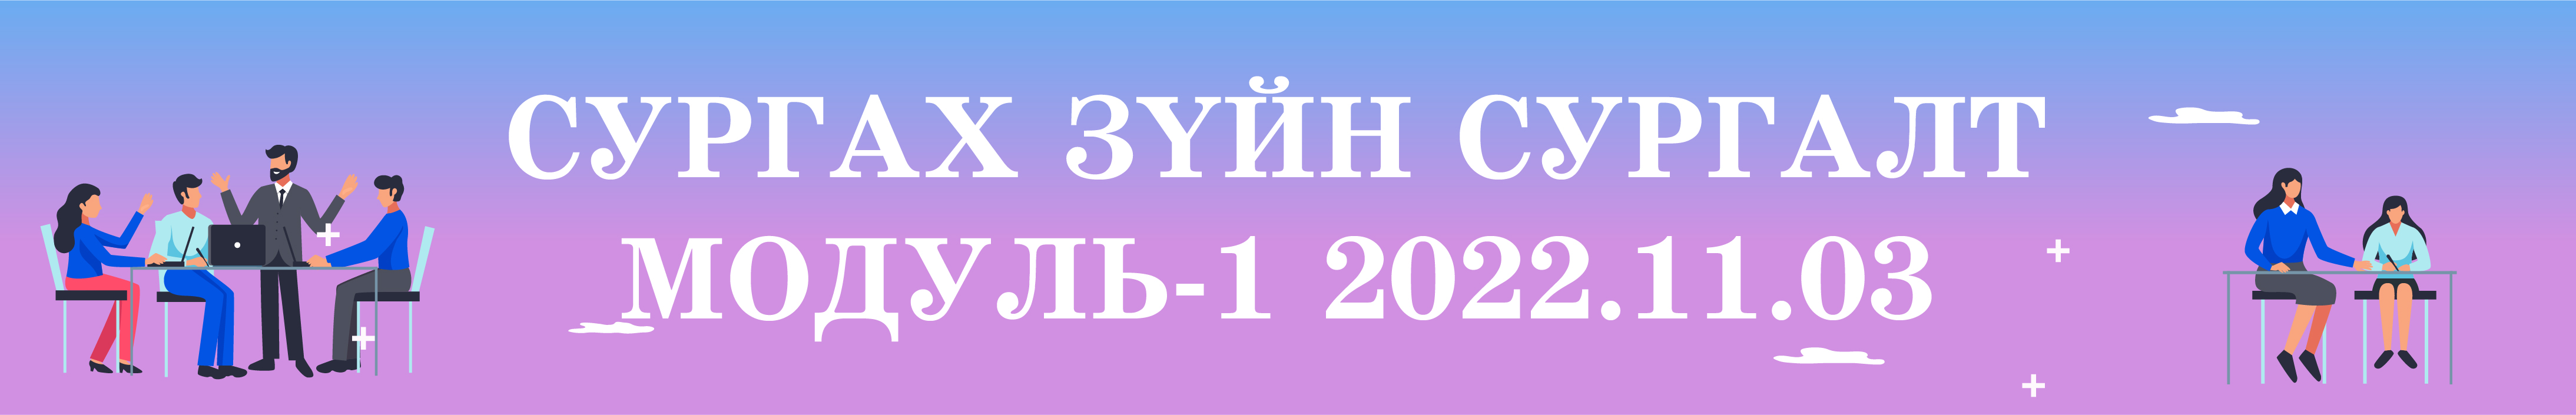 Сургах зүйн сургалт Модуль-1 2022.11.03